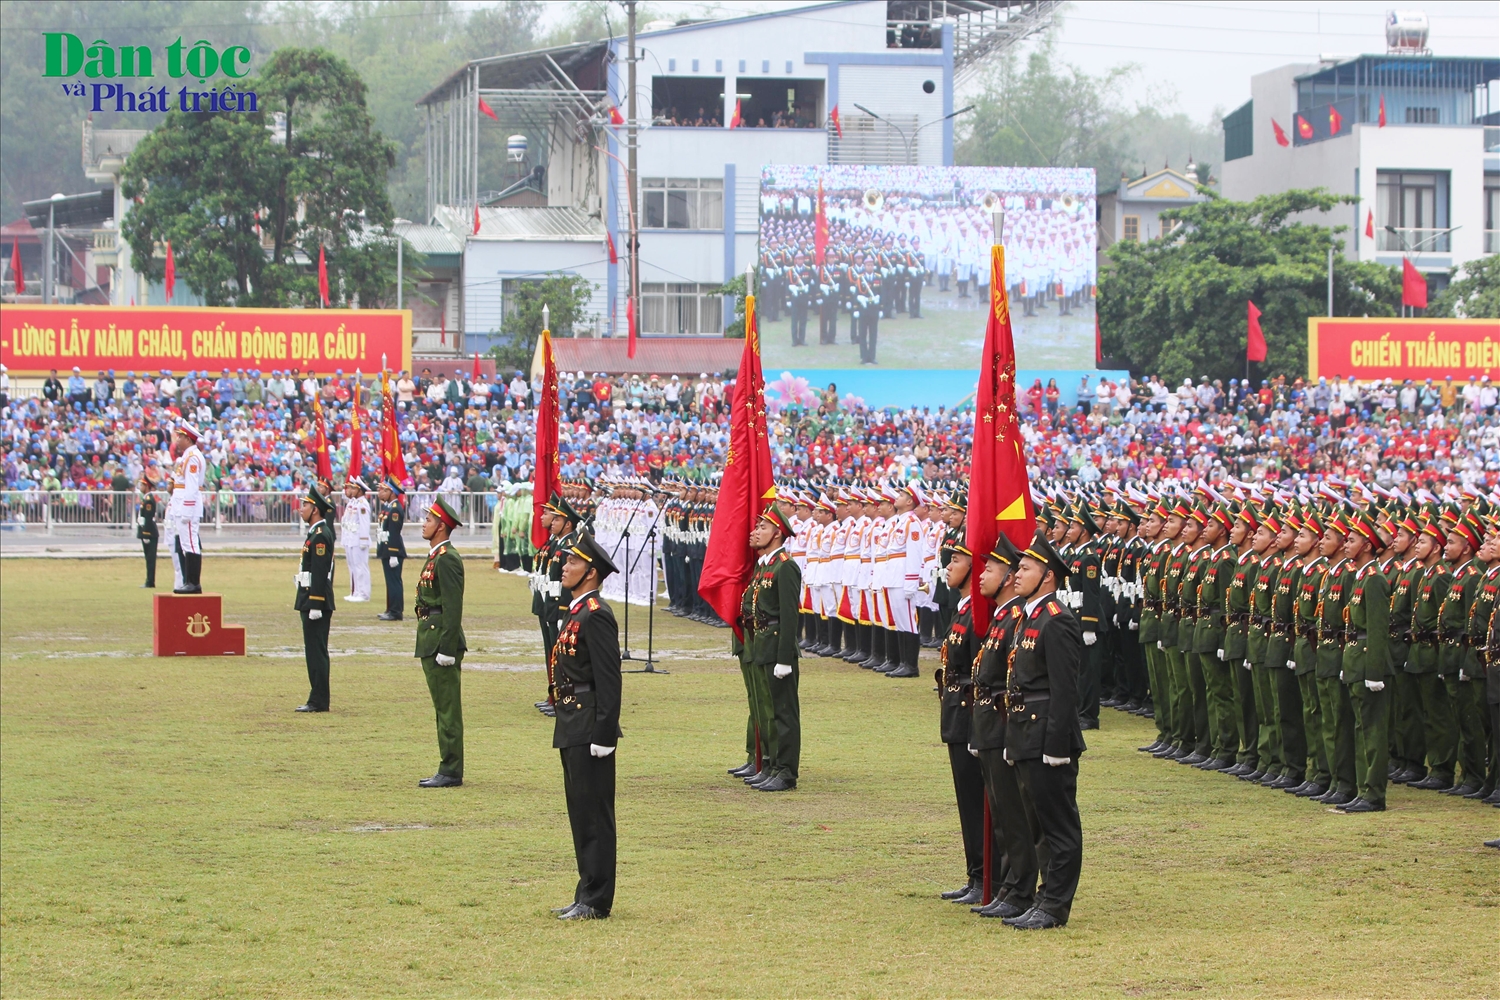 Đúng 8h45 ngày 7/5, các khối lực lượng bắt đầu Lễ diễu binh, diễu hành kỷ niệm 70 năm Chiến thắng Điện Biên Phủ "lừng lẫy năm châu, chấn động địa cầu".